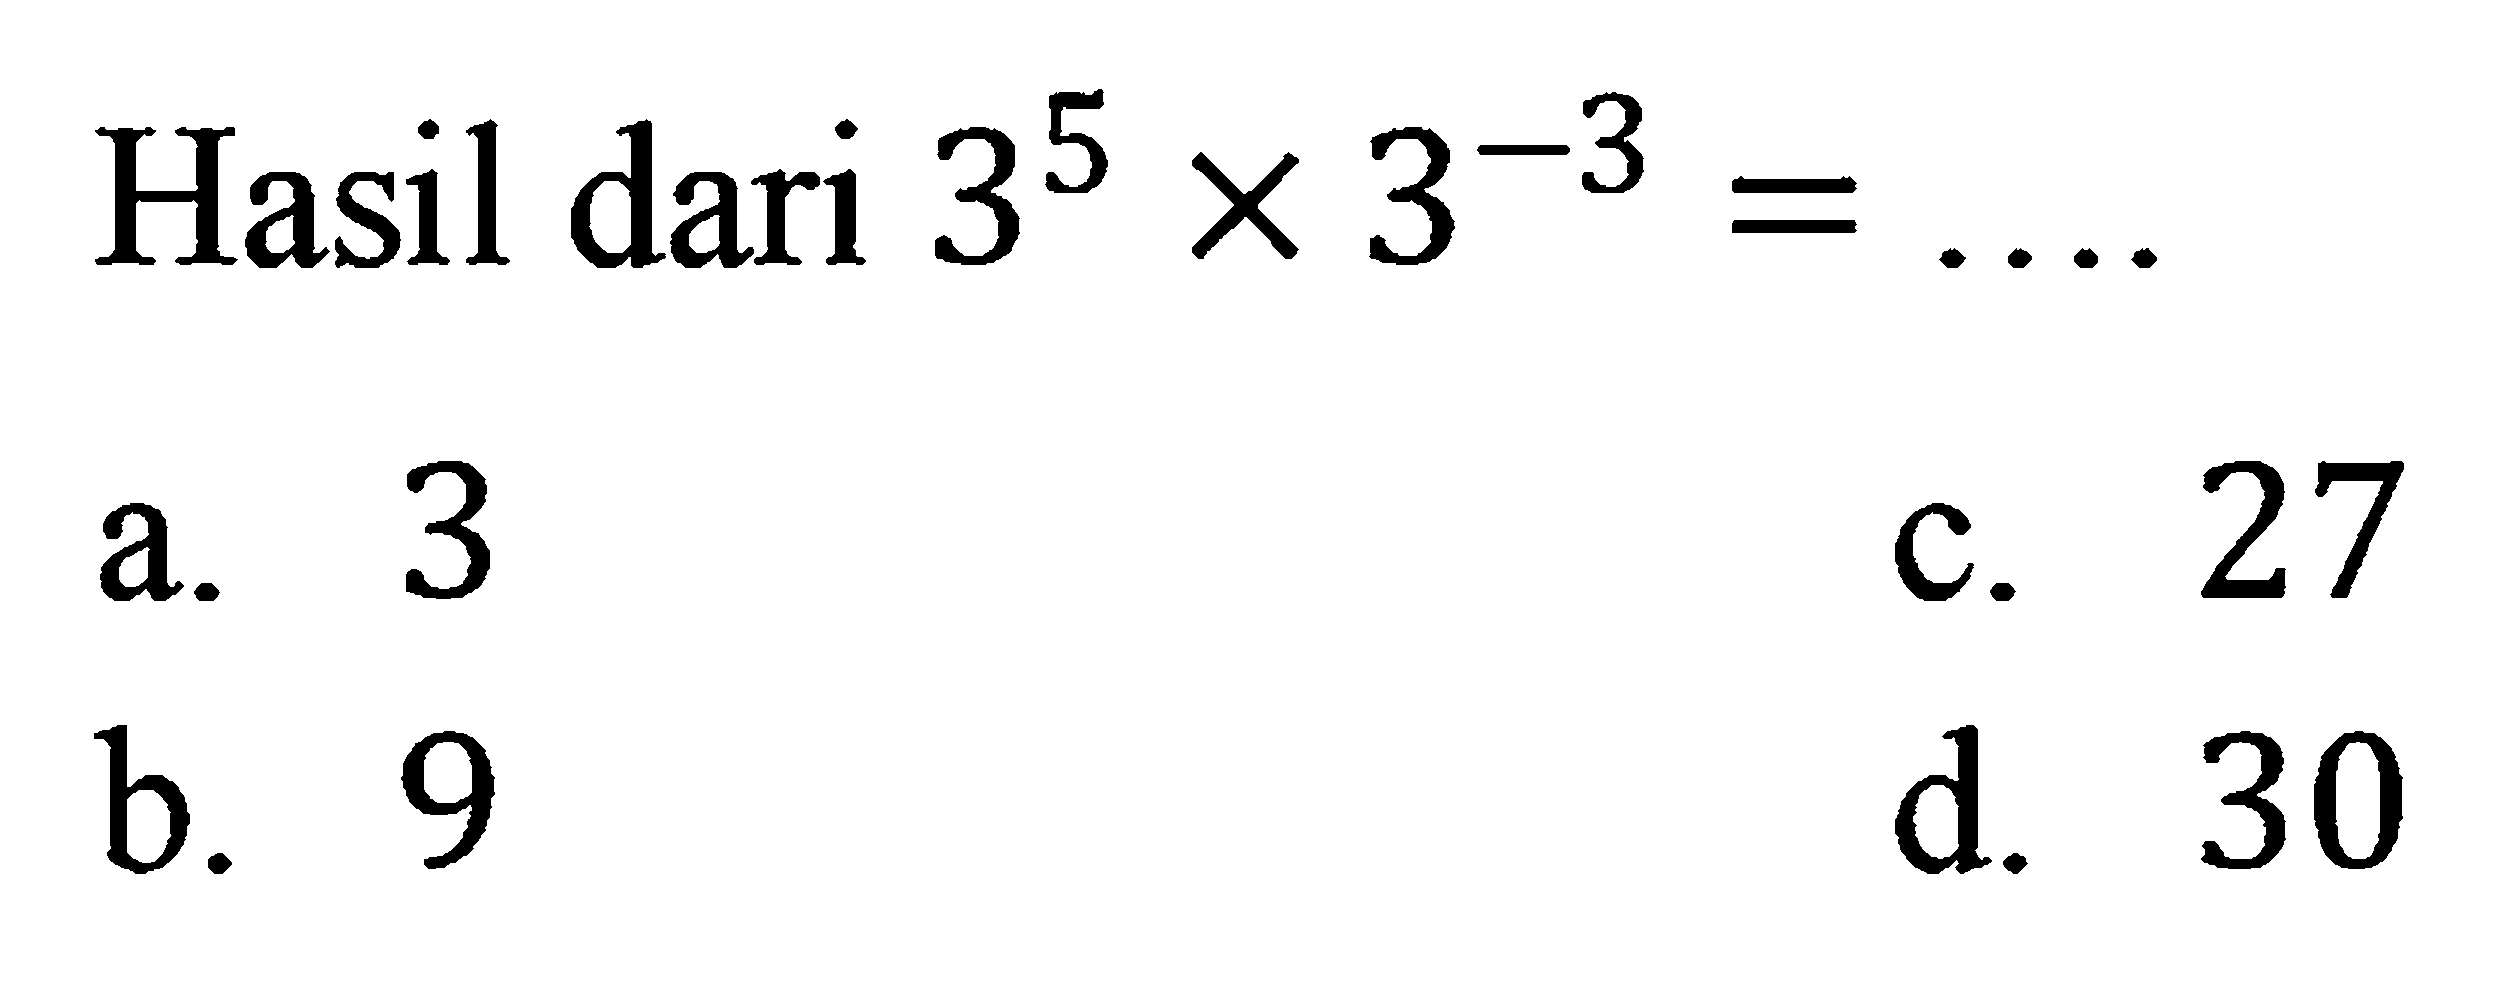 Hasil dari 3^5 x 3^-3 = ....